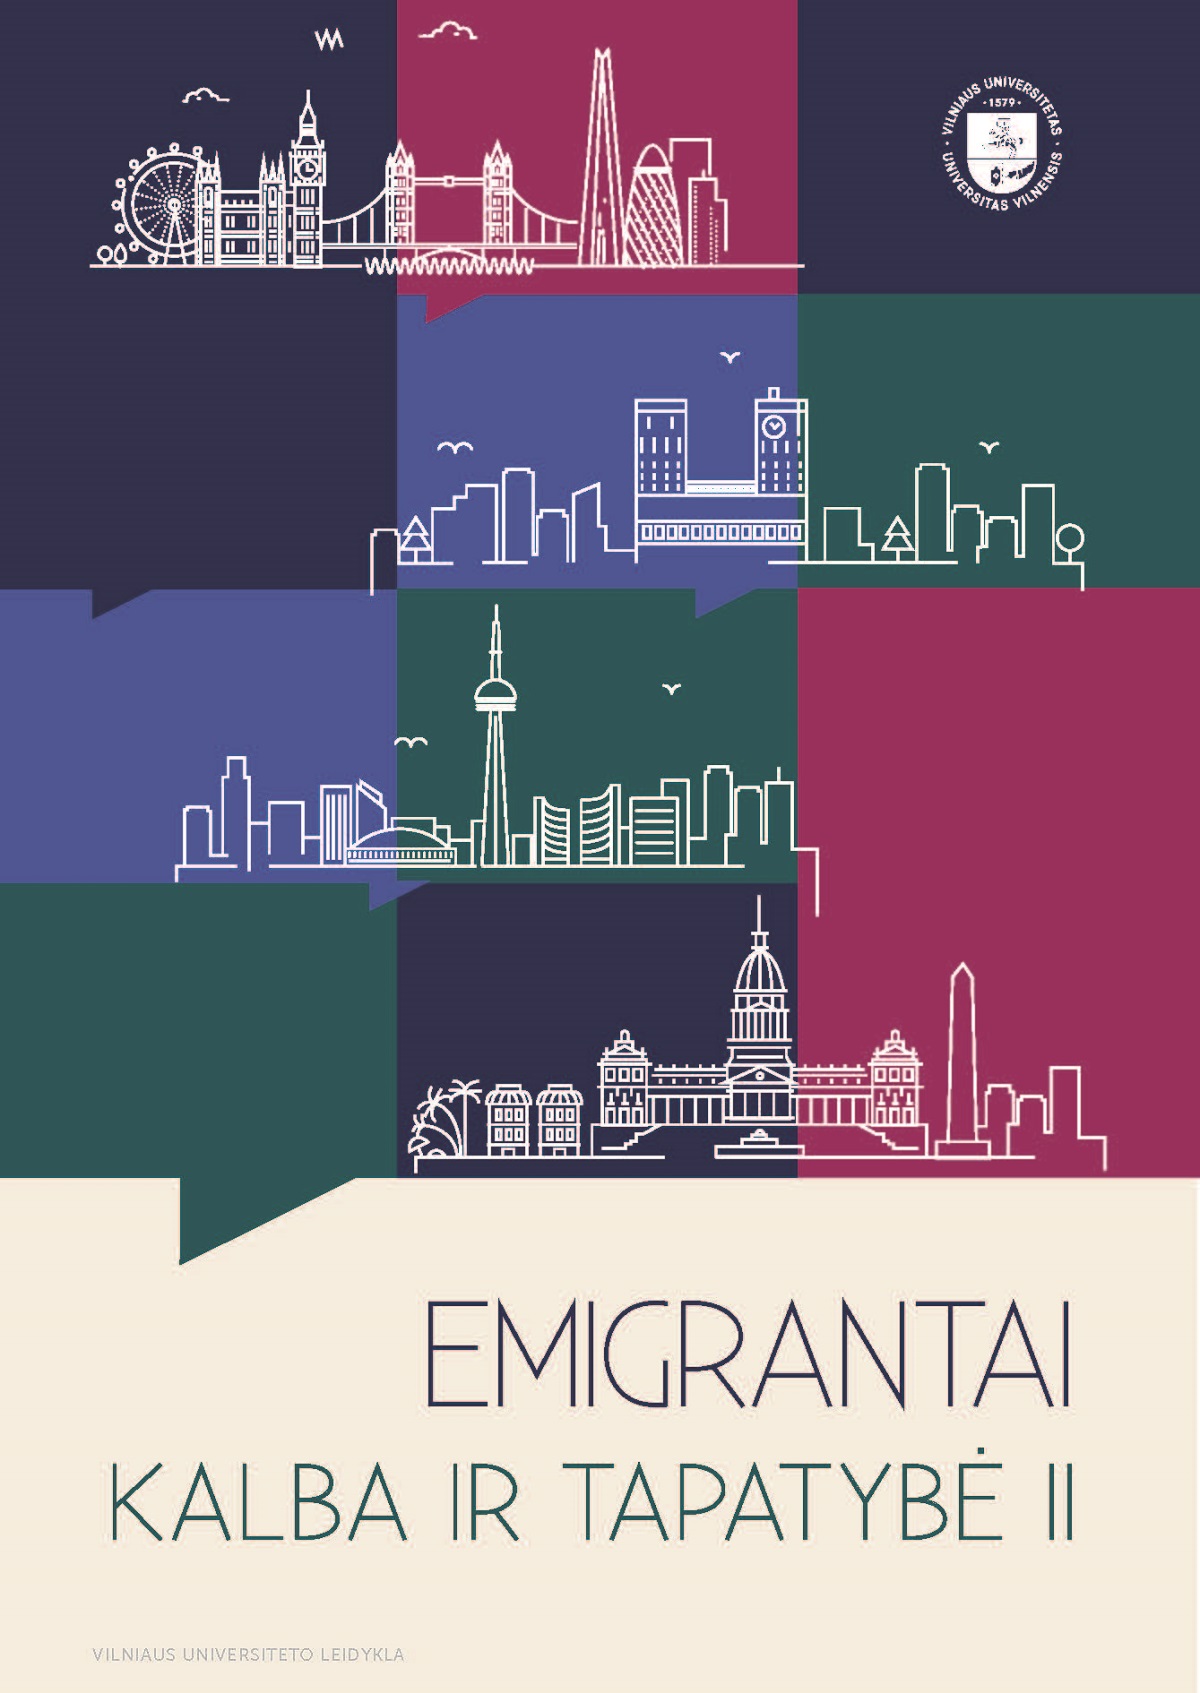 Emigrantai: kalba ir tapatybė II